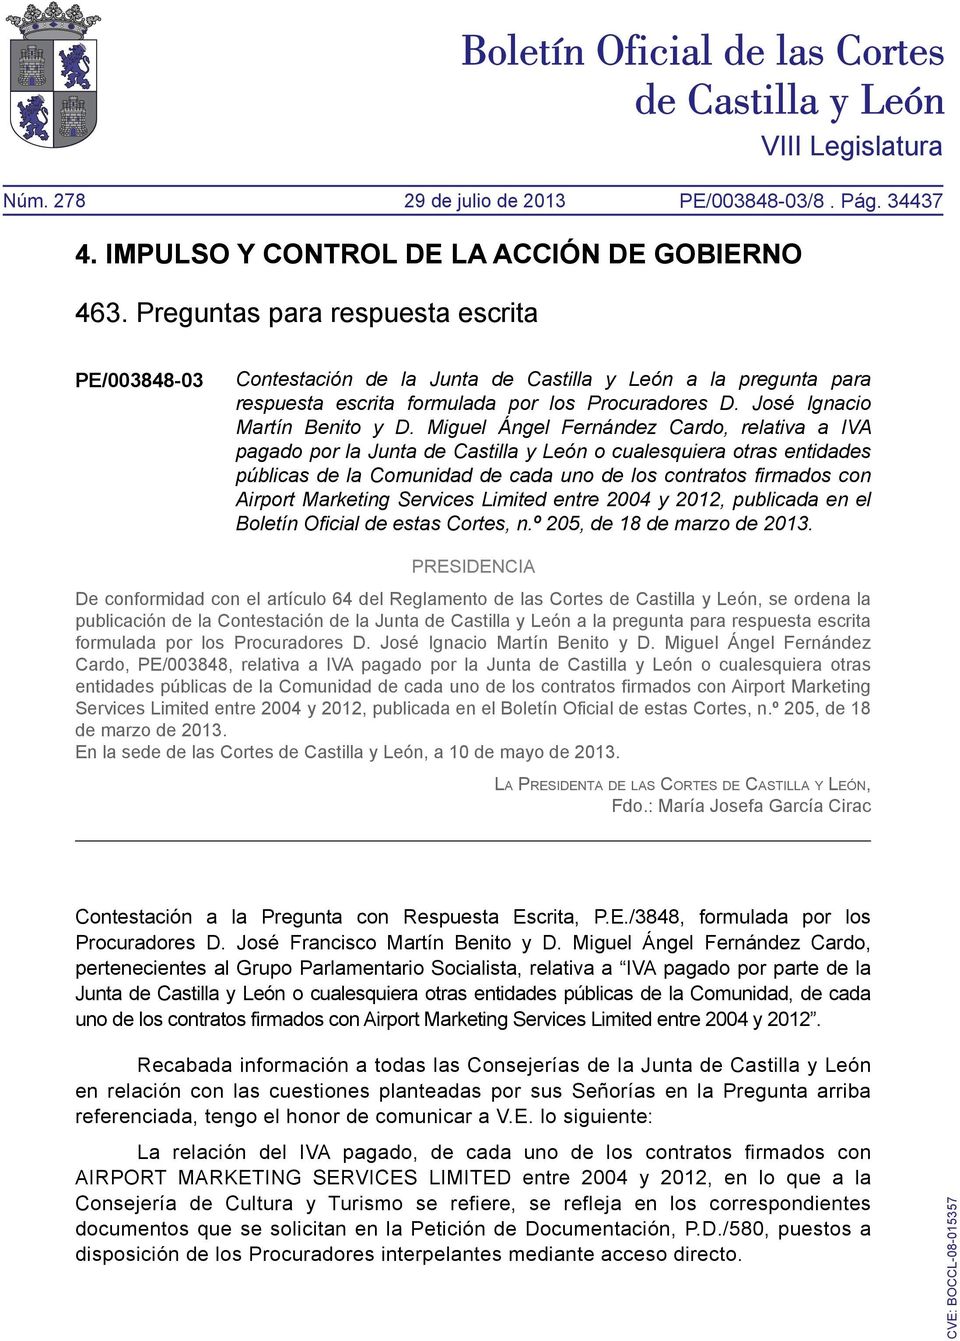 Services Limited entre 2004 y 2012, publicada en el Boletín Oficial de estas Cortes, n.º 205, de 18 de marzo de 2013.